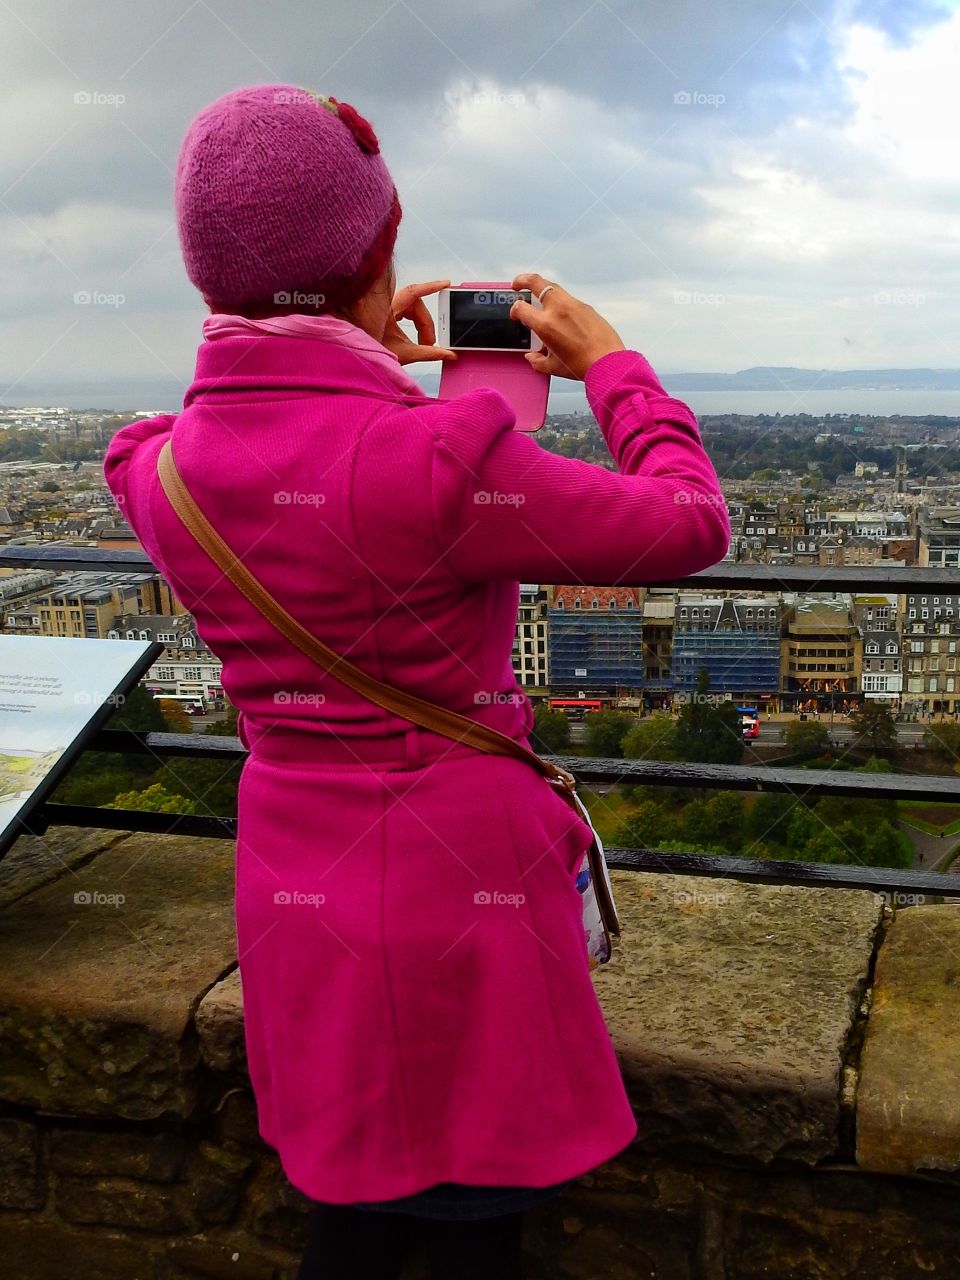 Capturing Edinburgh